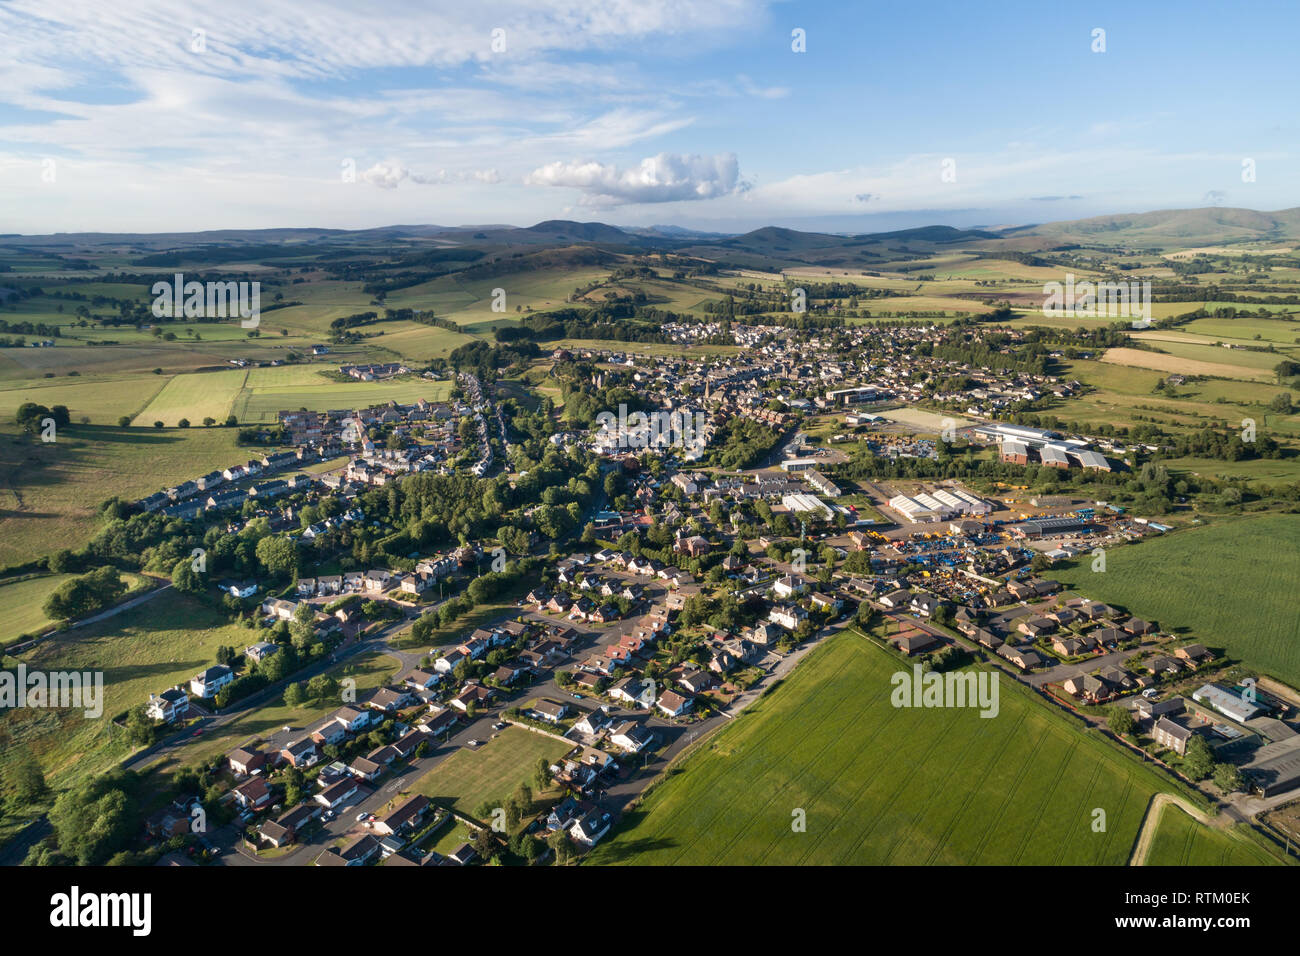 Imagen aérea de la ciudad de Biggar en South Lanarkshire mostrando la parte superior del Valle Clyde y las colinas de la región de Scottish Borders, tomada en la tarde de sol. Foto de stock